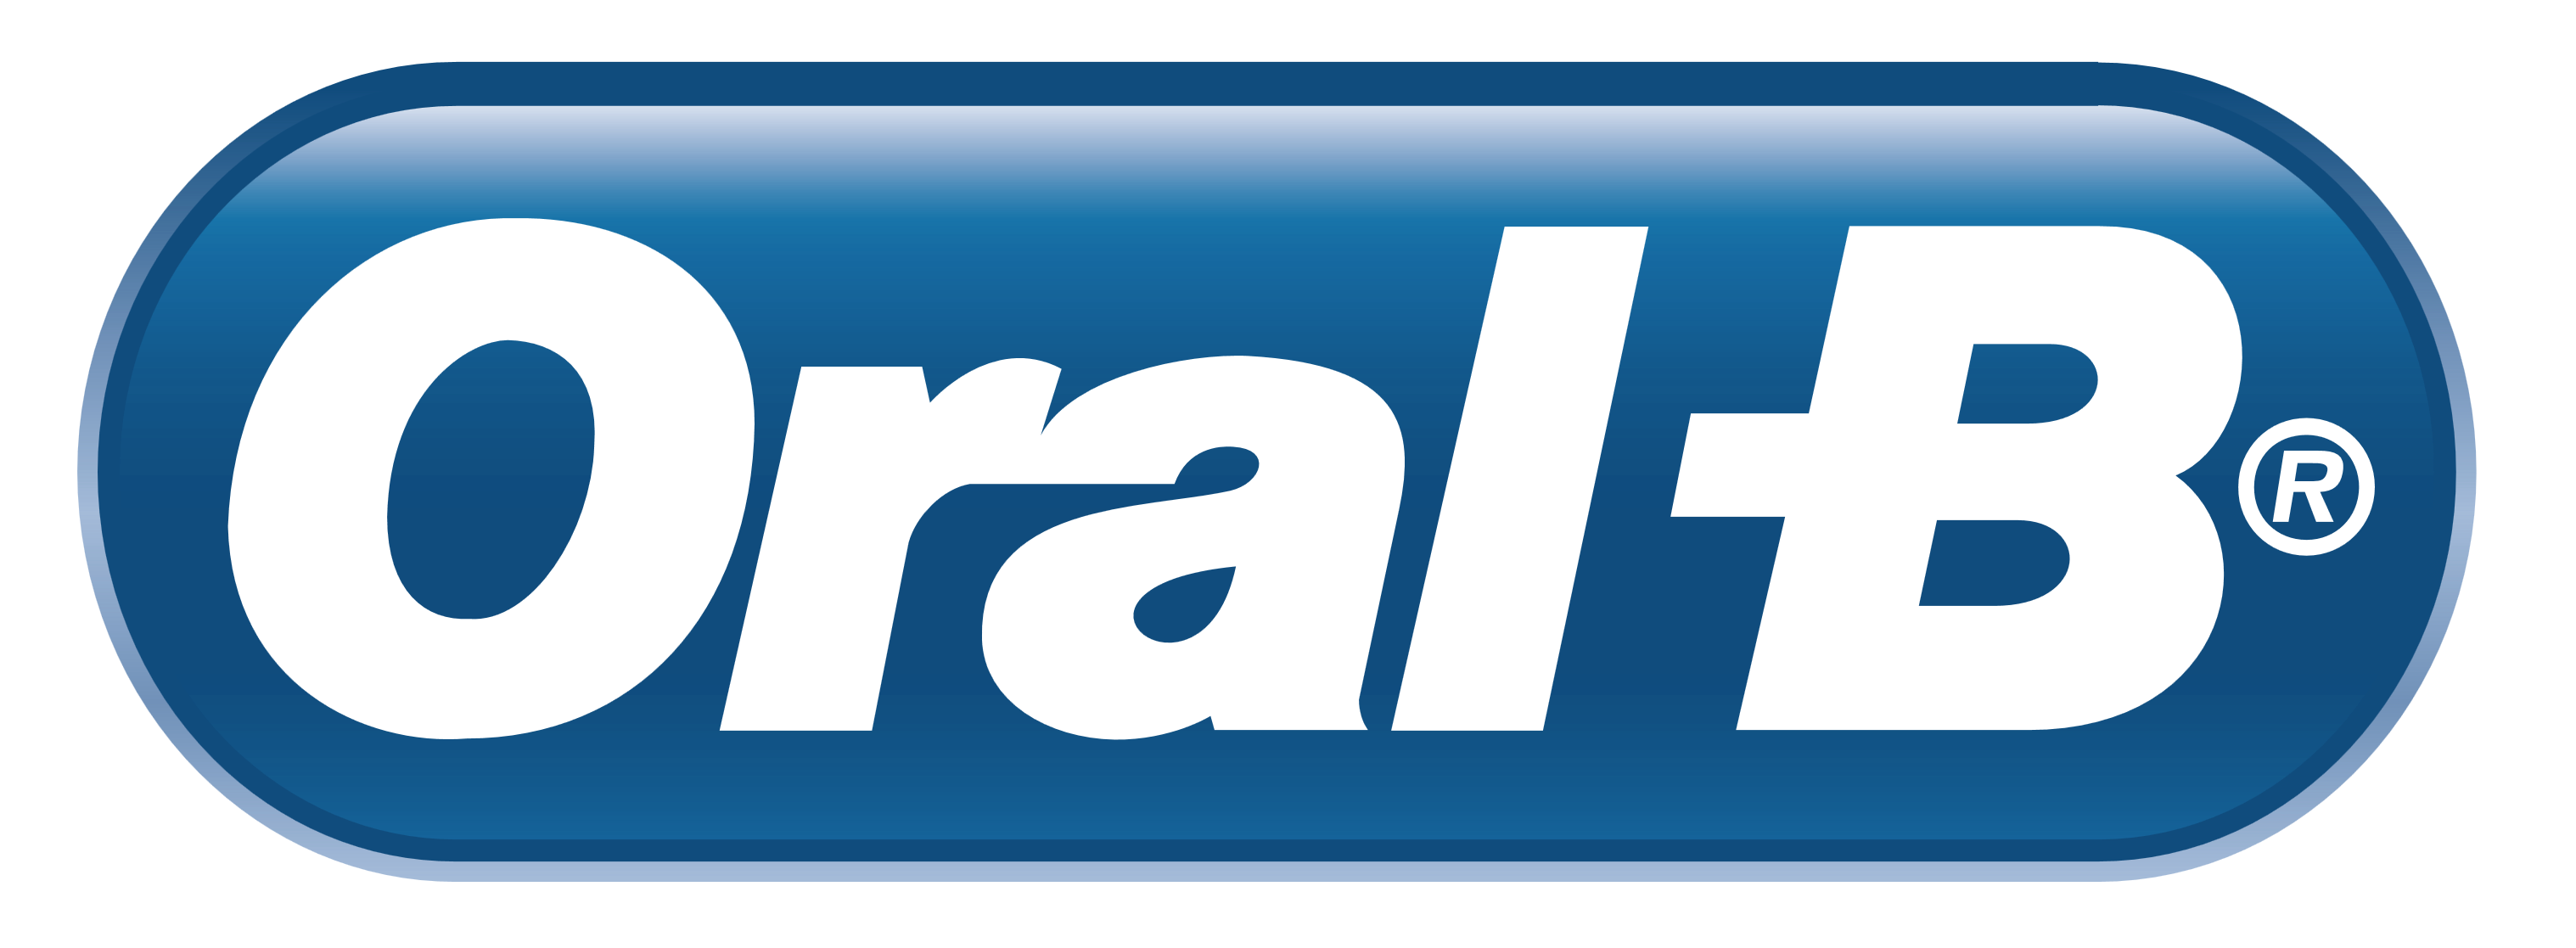 Oral B logo, logotype